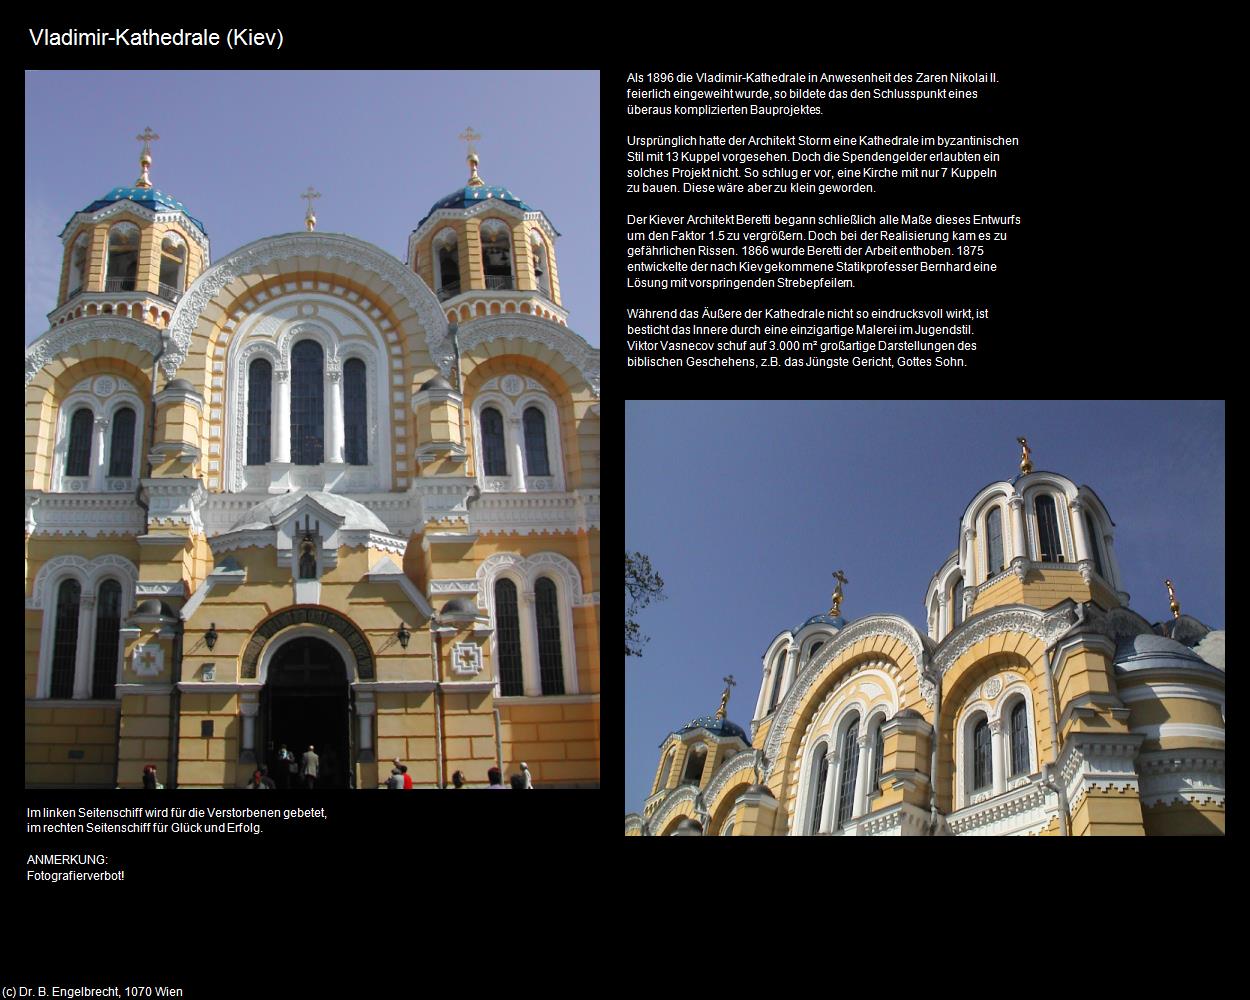 Vladimir-Kathedrale (Kiev) in UKRAINE